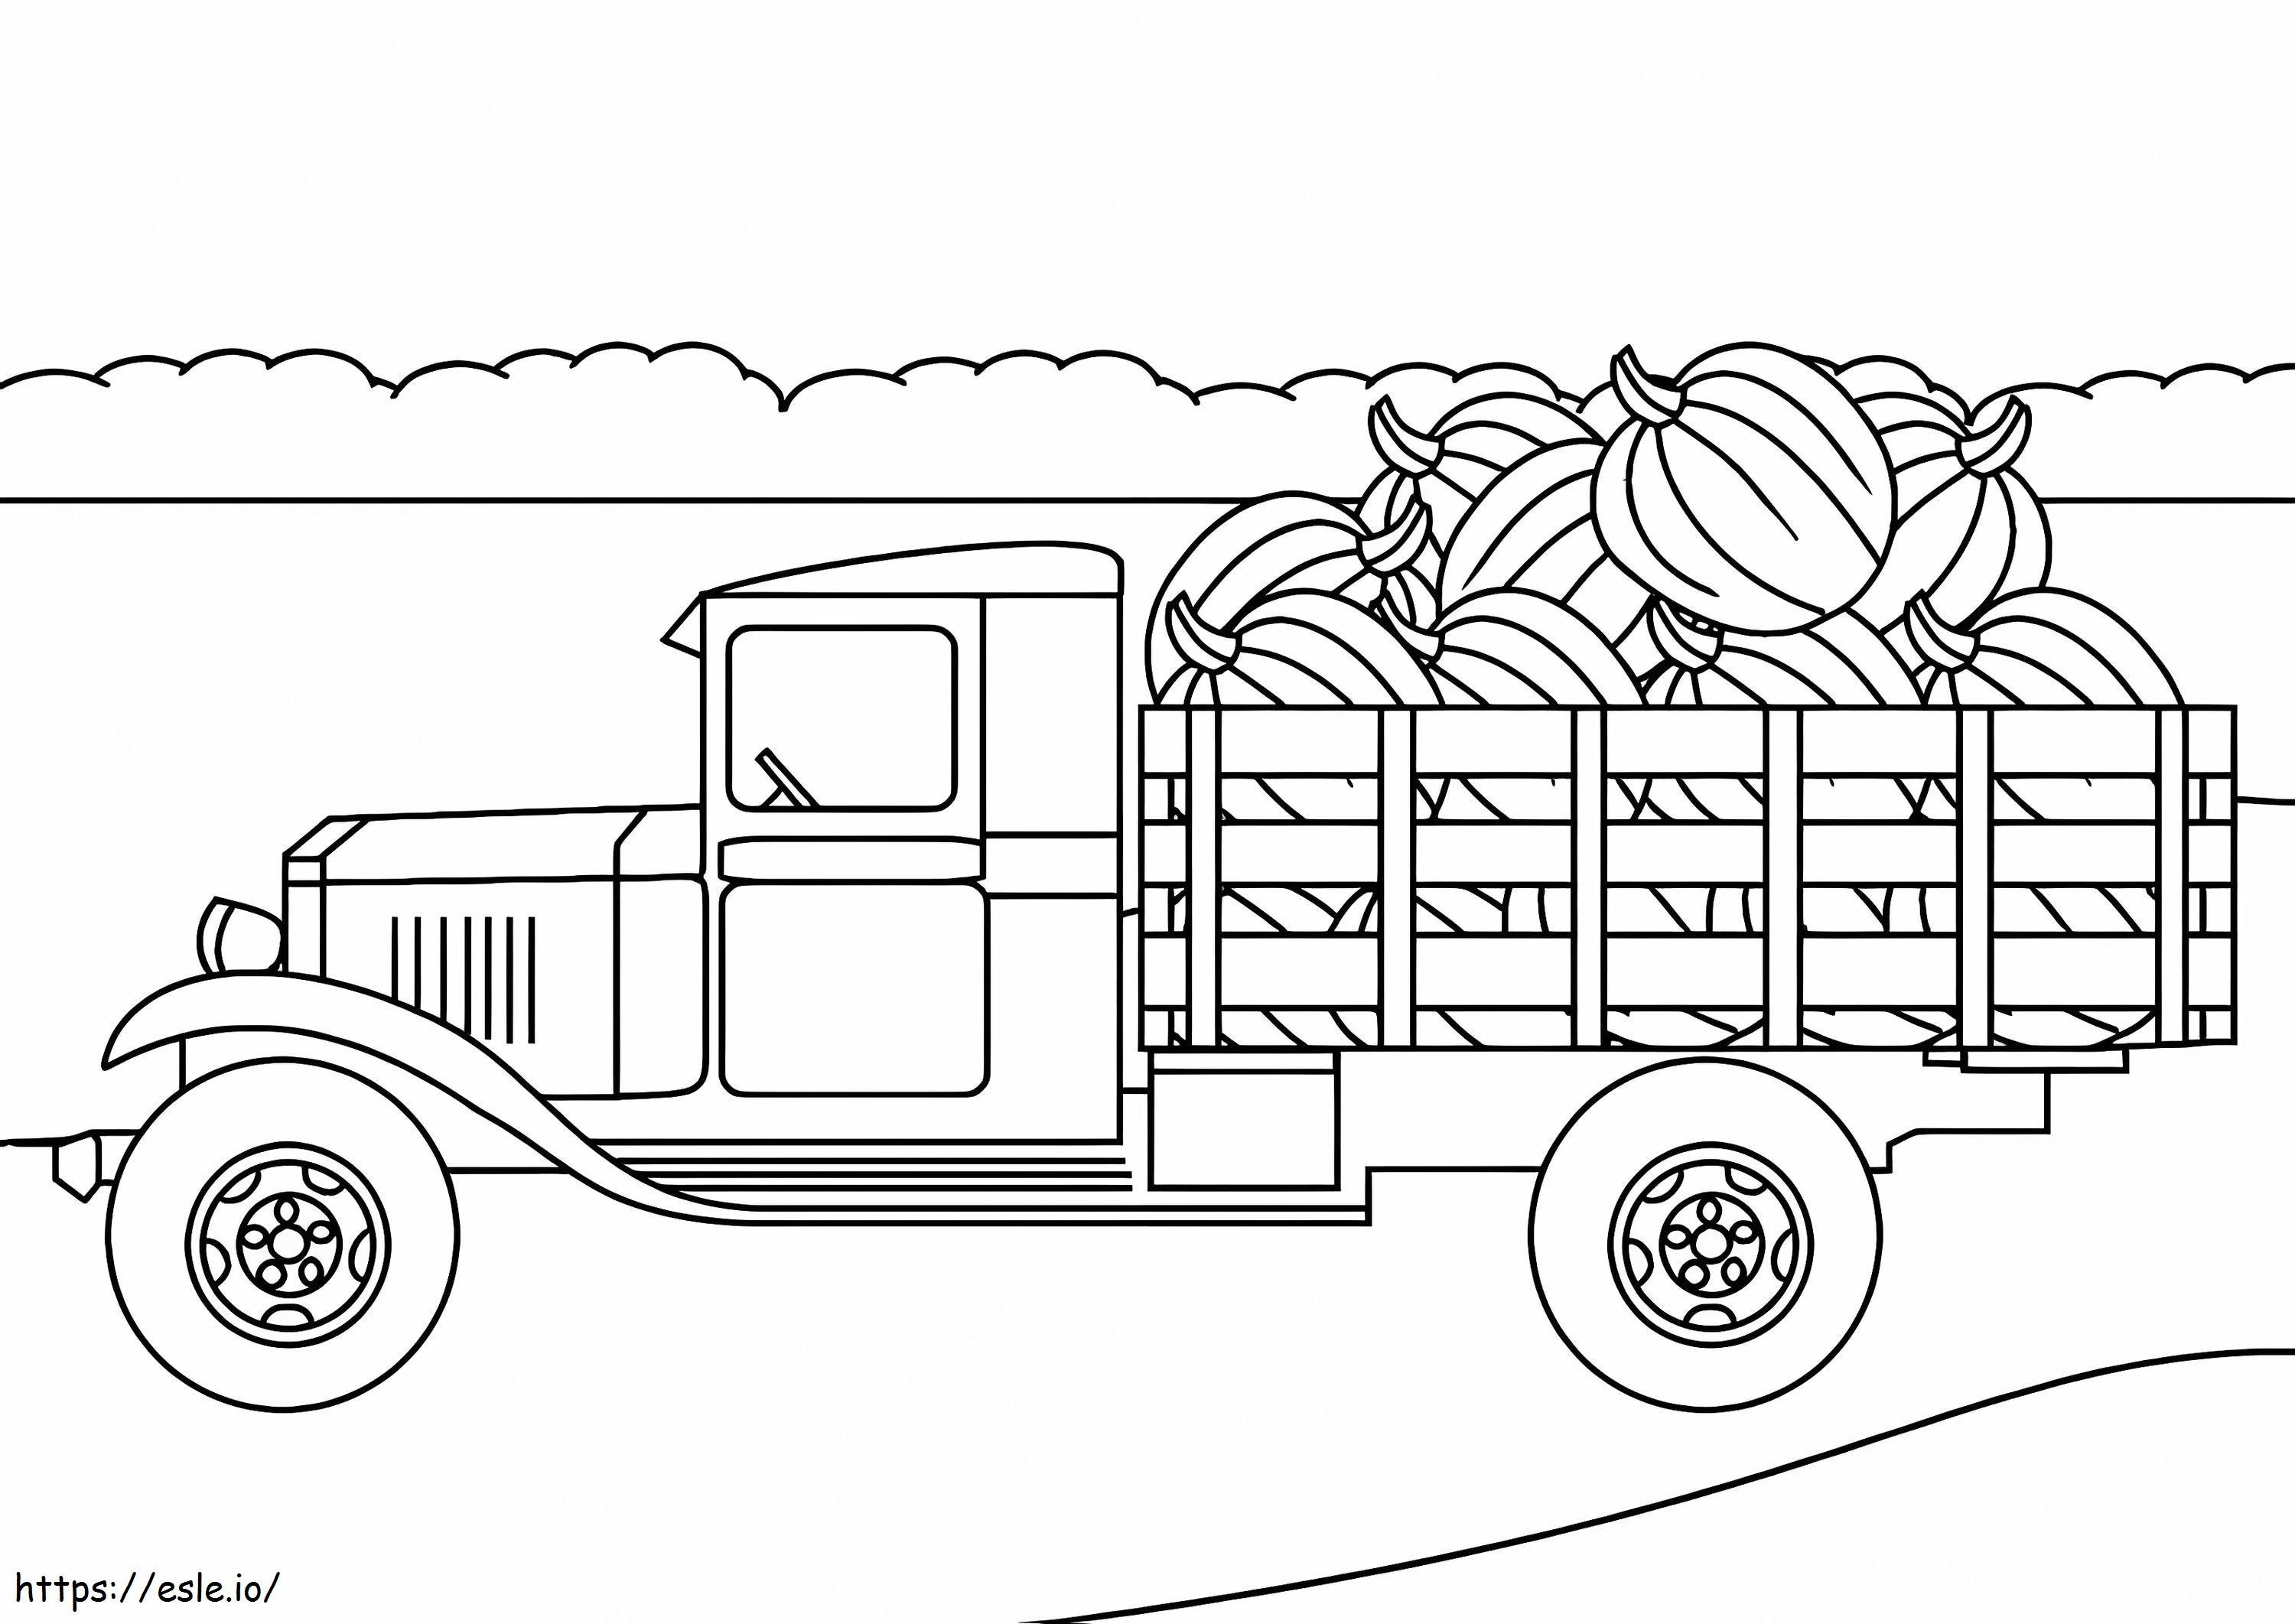 Camion agricolo da colorare